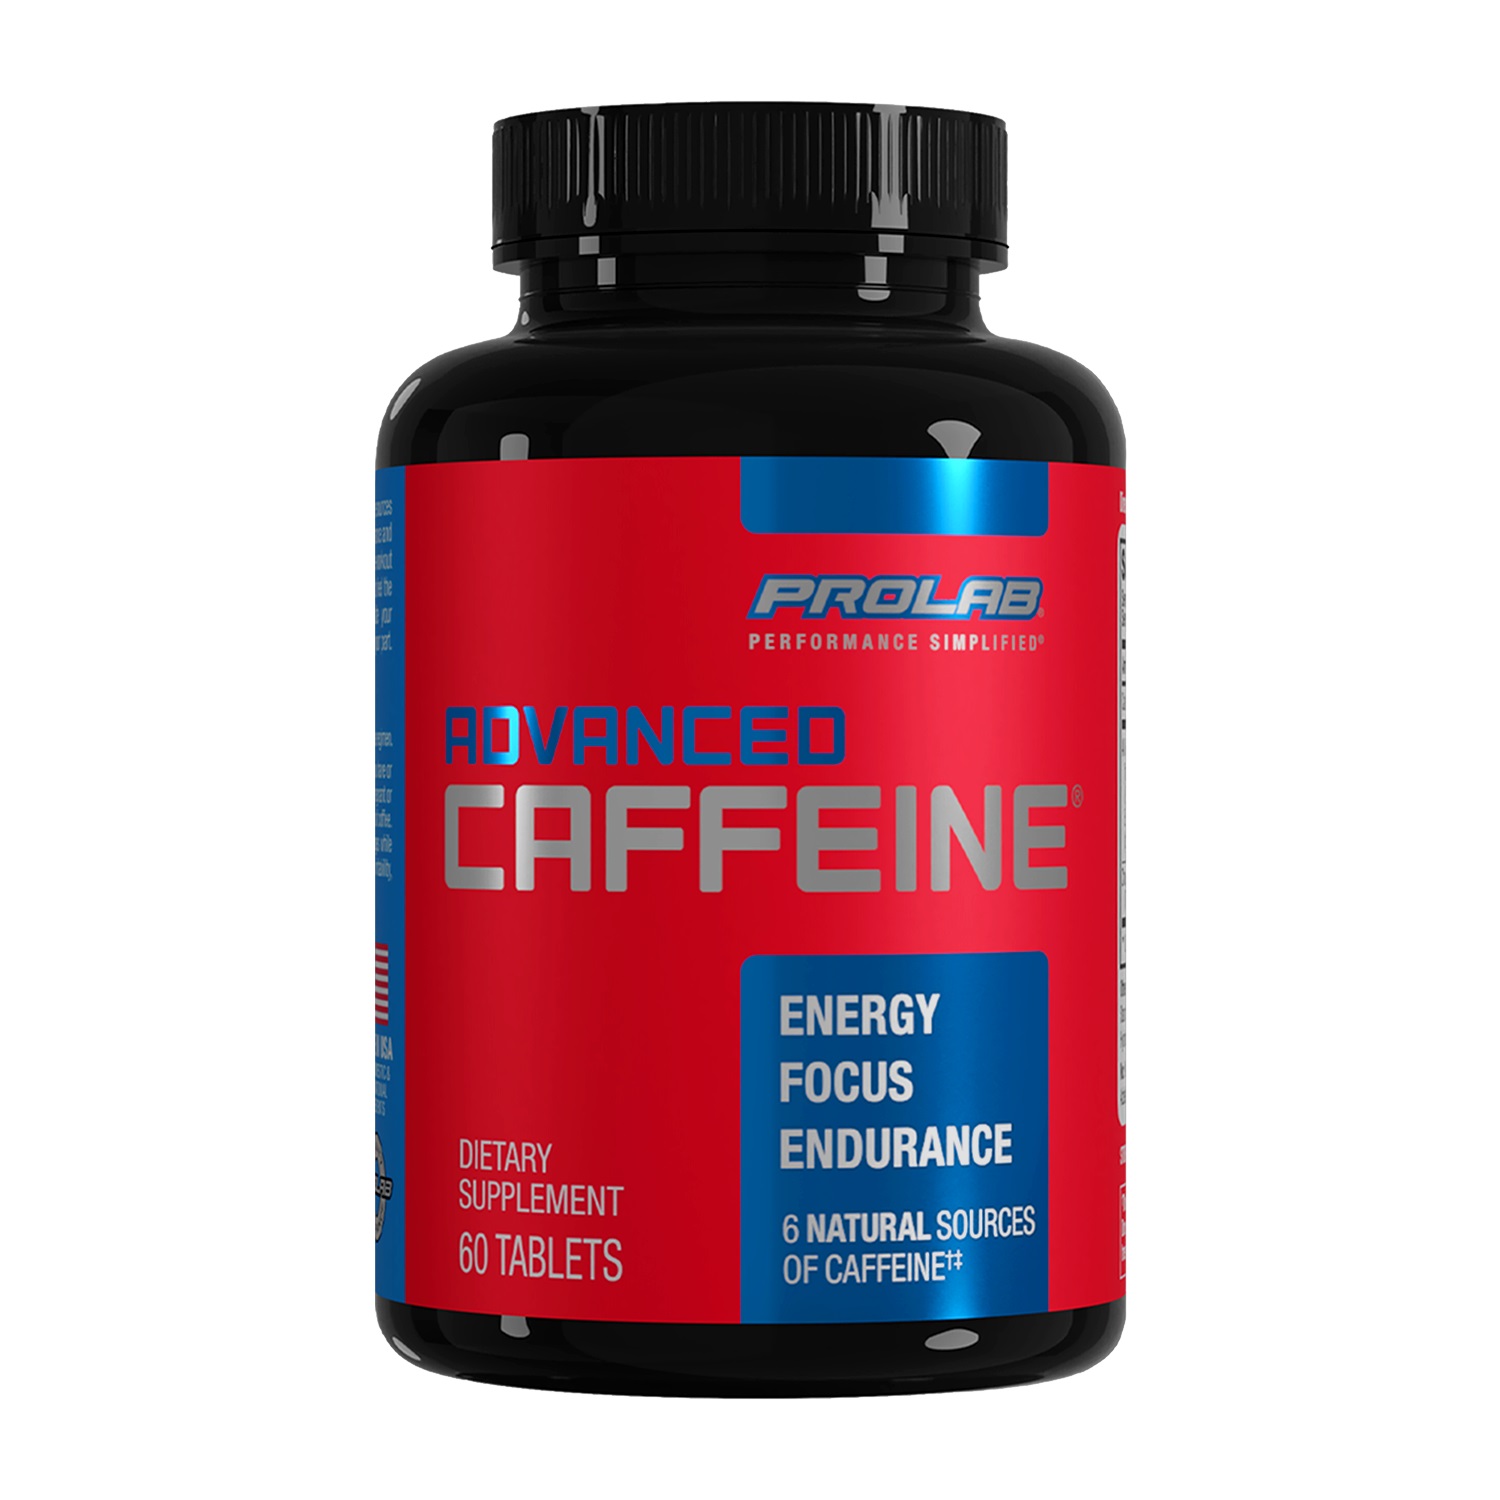 8-best-caffeine-supplement